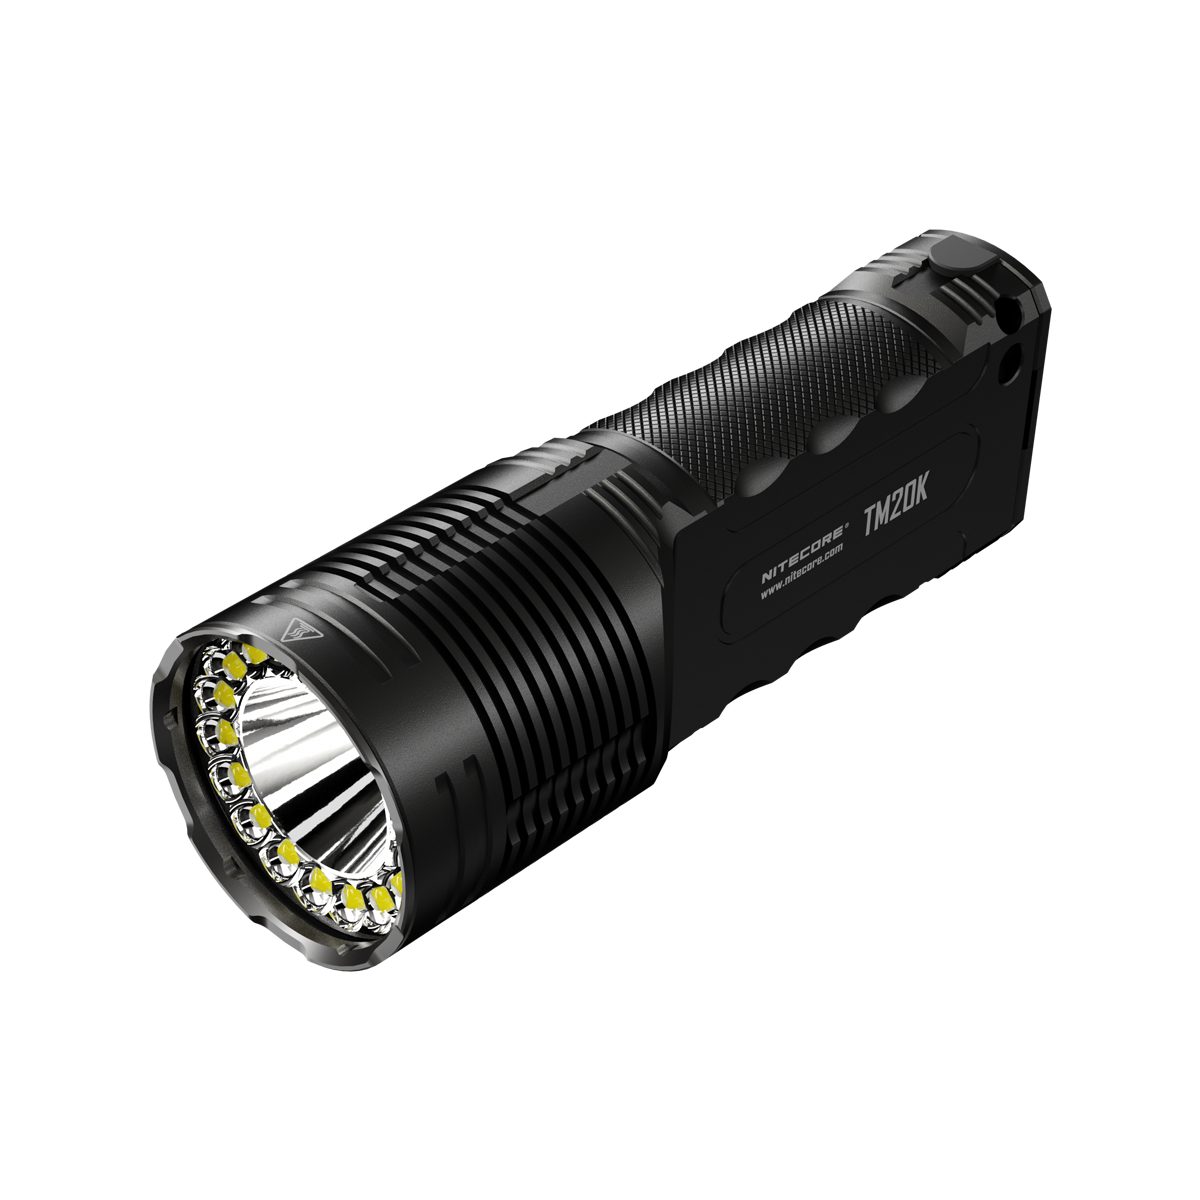 Nitecore LED Taschenlampe Suchscheinwerfer TM20K LED Akku, Outdoor Lampe (1-St) inkl. aufladbar